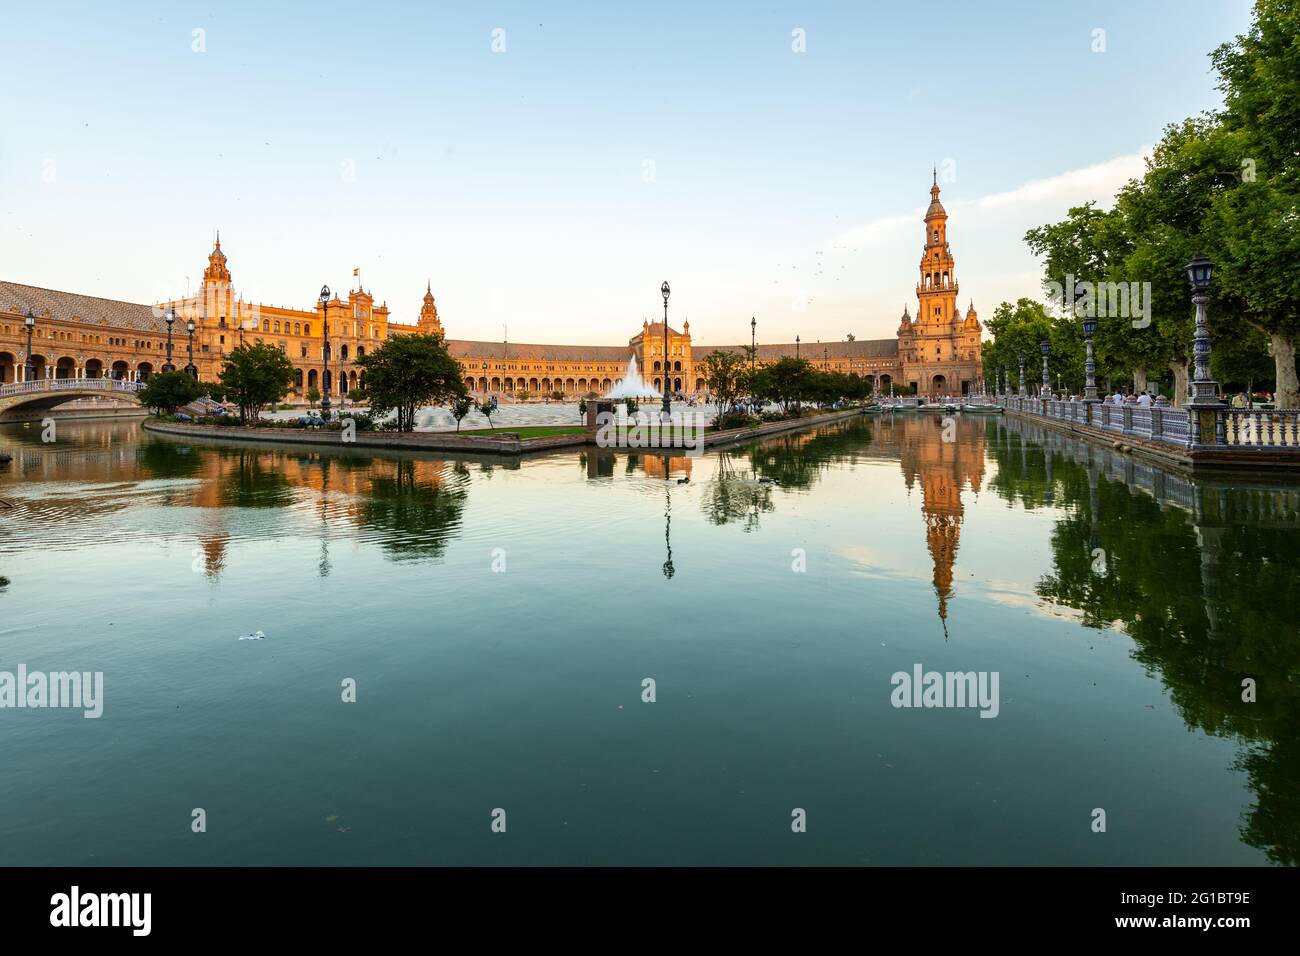 Plaza de España, Seville, Andalusia, Spain Stock Photo